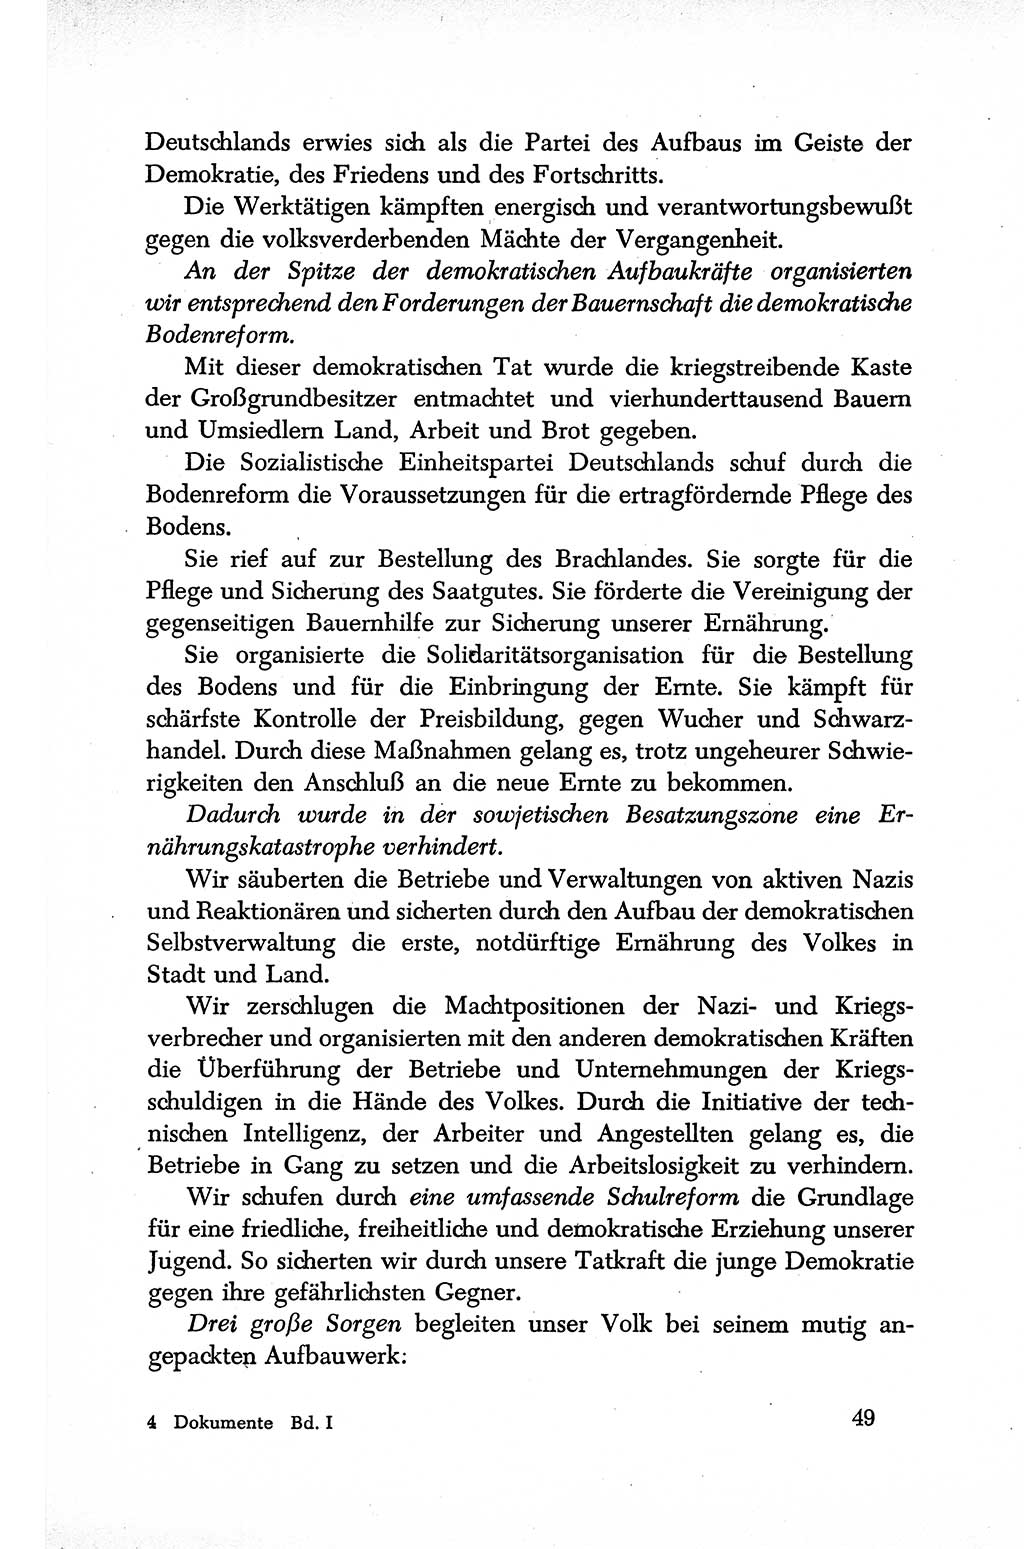 Dokumente der Sozialistischen Einheitspartei Deutschlands (SED) [Sowjetische Besatzungszone (SBZ) Deutschlands] 1946-1948, Seite 49 (Dok. SED SBZ Dtl. 1946-1948, S. 49)